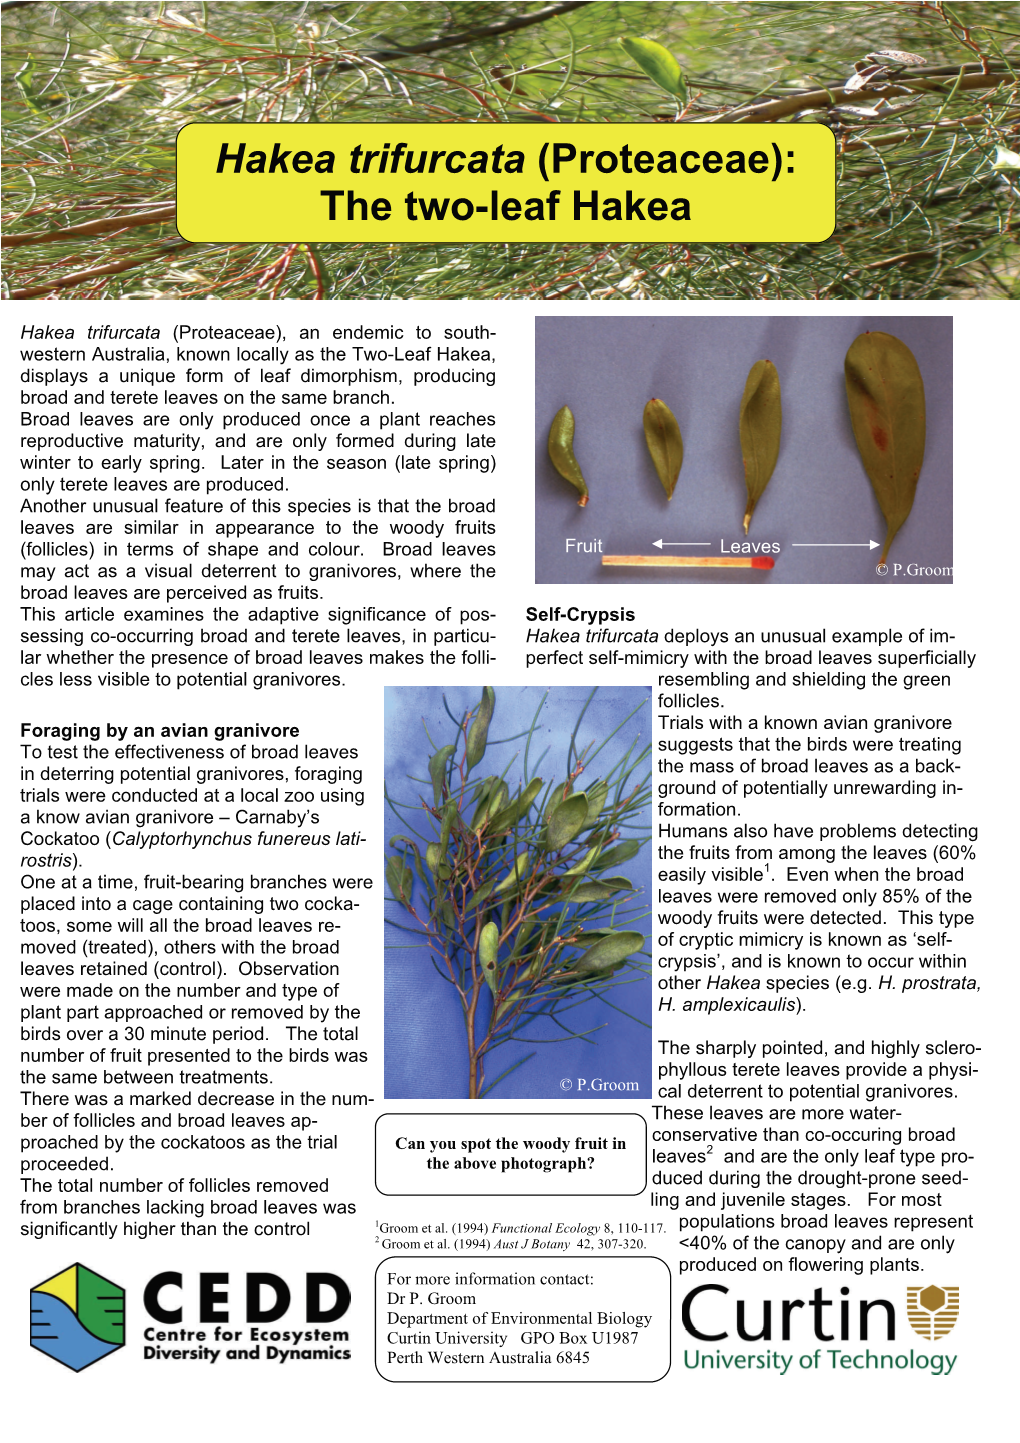 Hakea Trifurcata (Proteaceae): the Two-Leaf Hakea